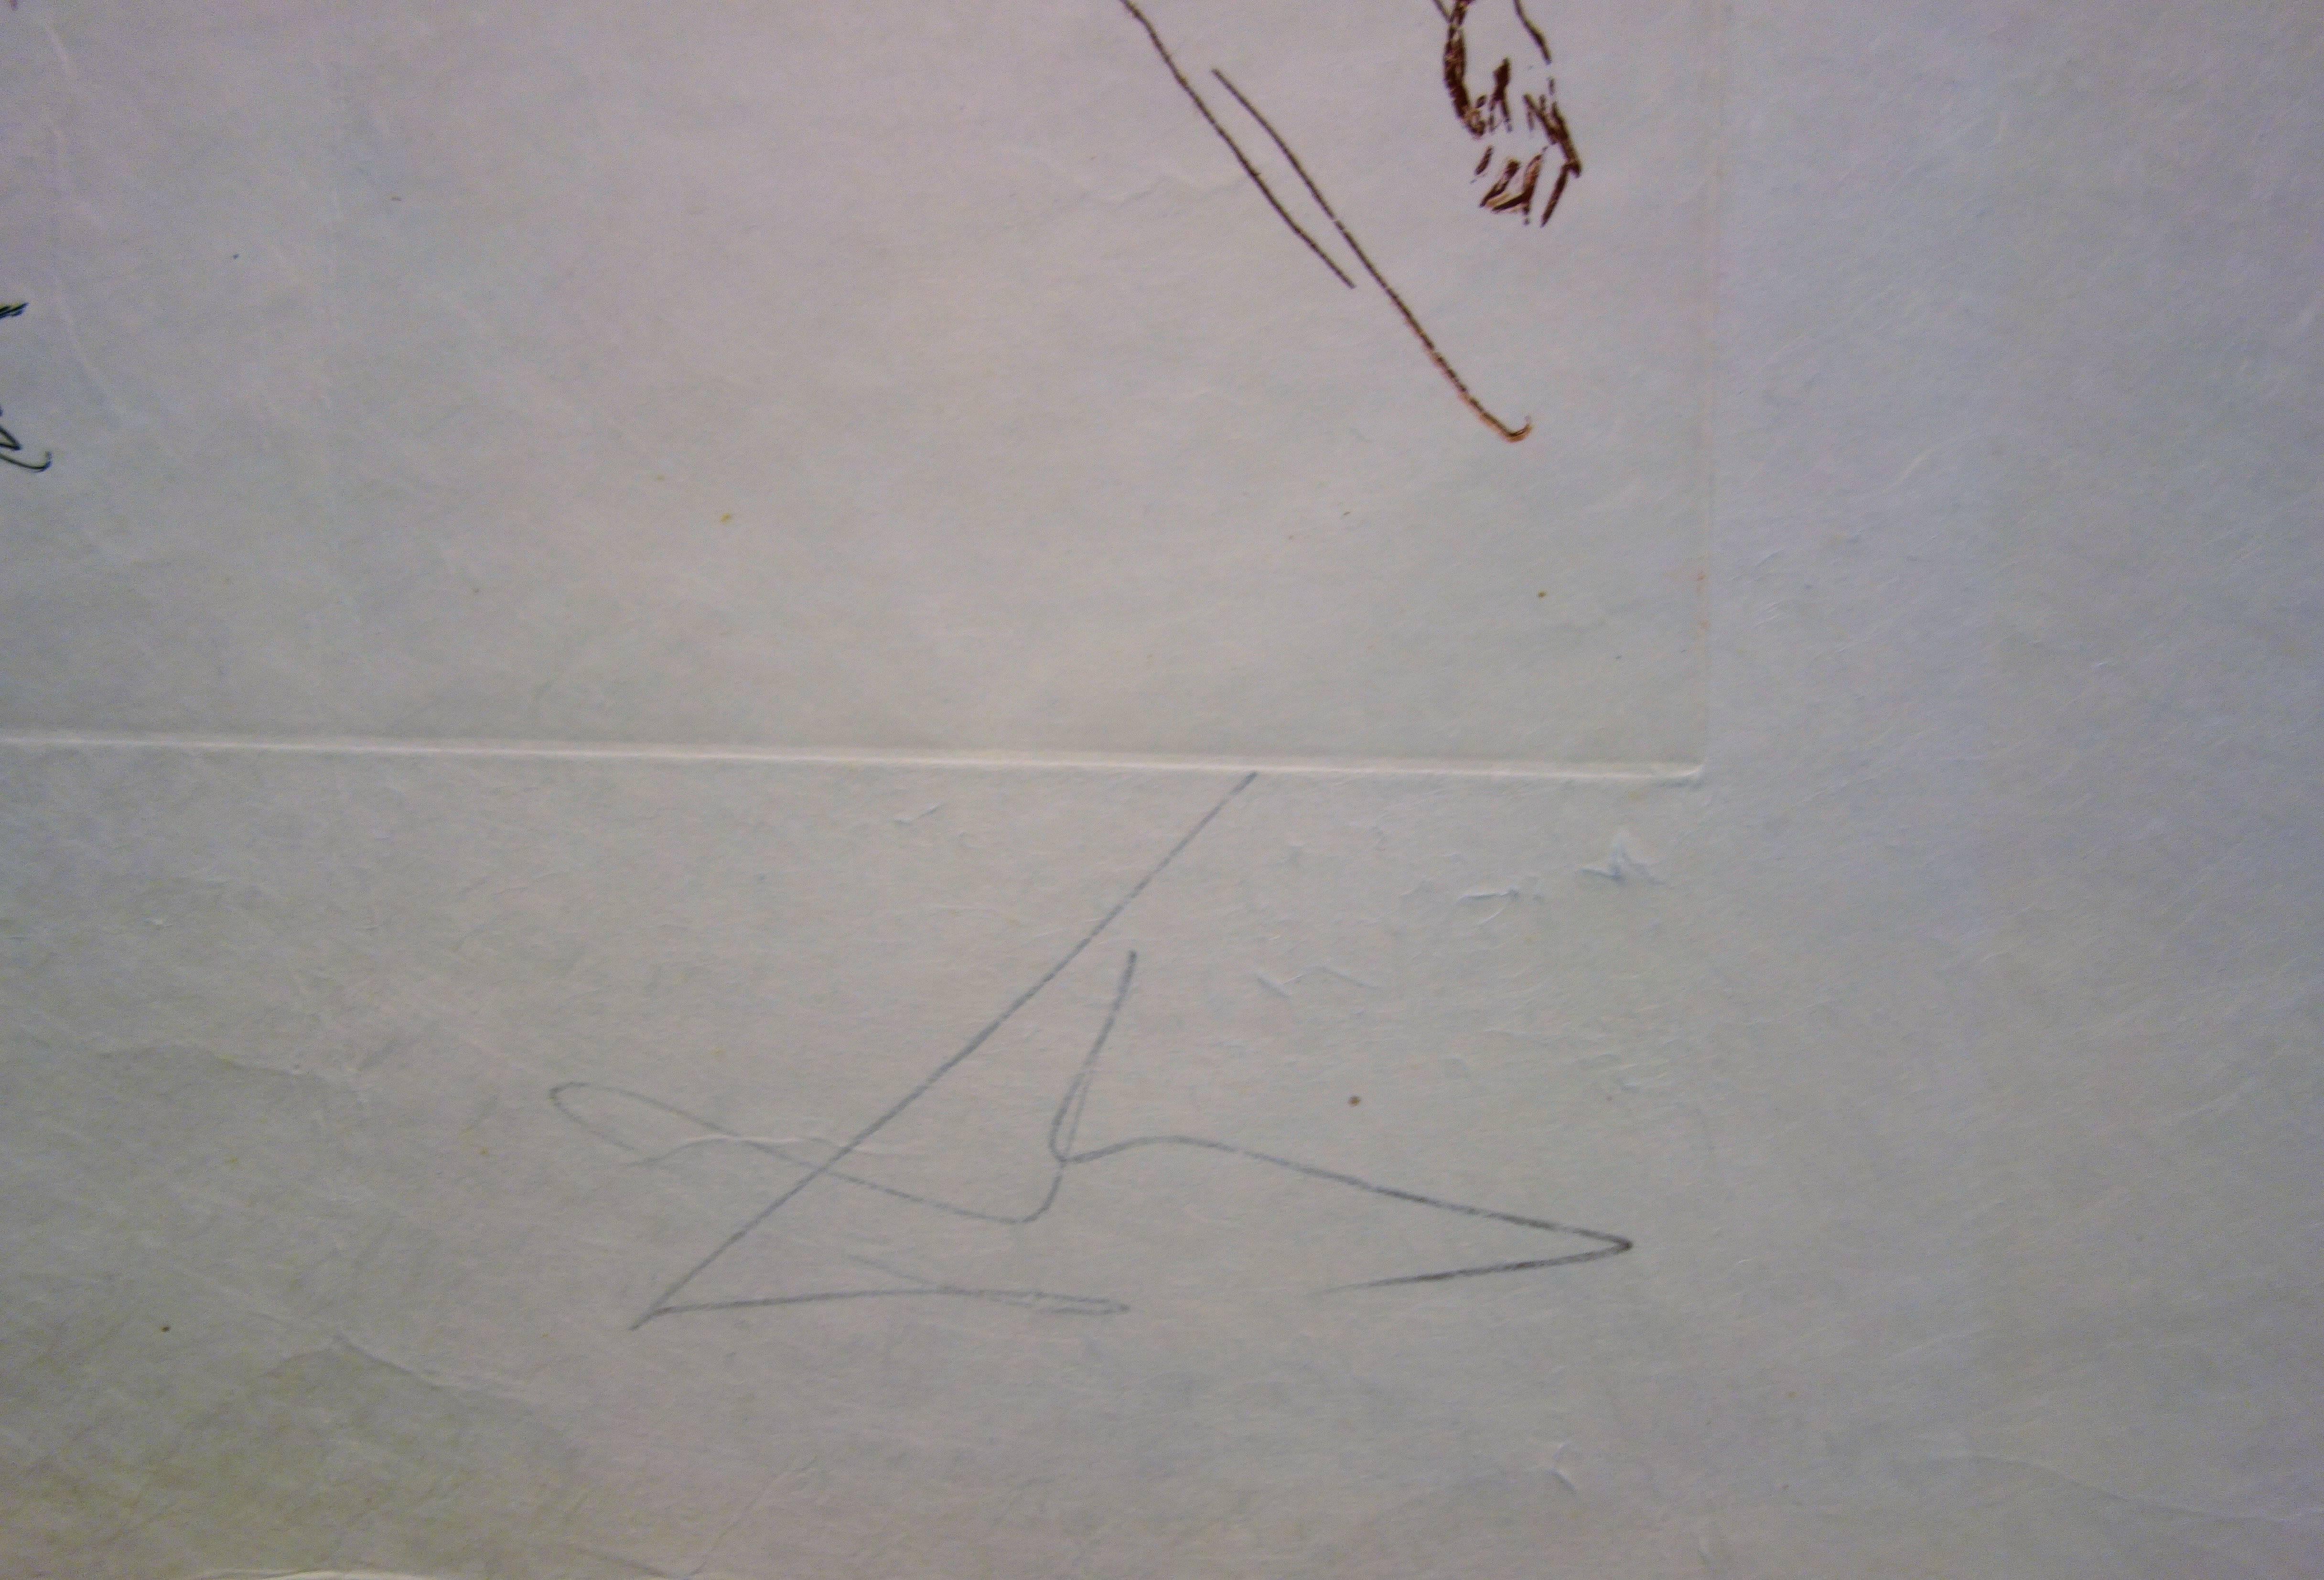 Épris d'une folle passion - Original etching - 1979 - 50 exem - Print by Salvador Dalí